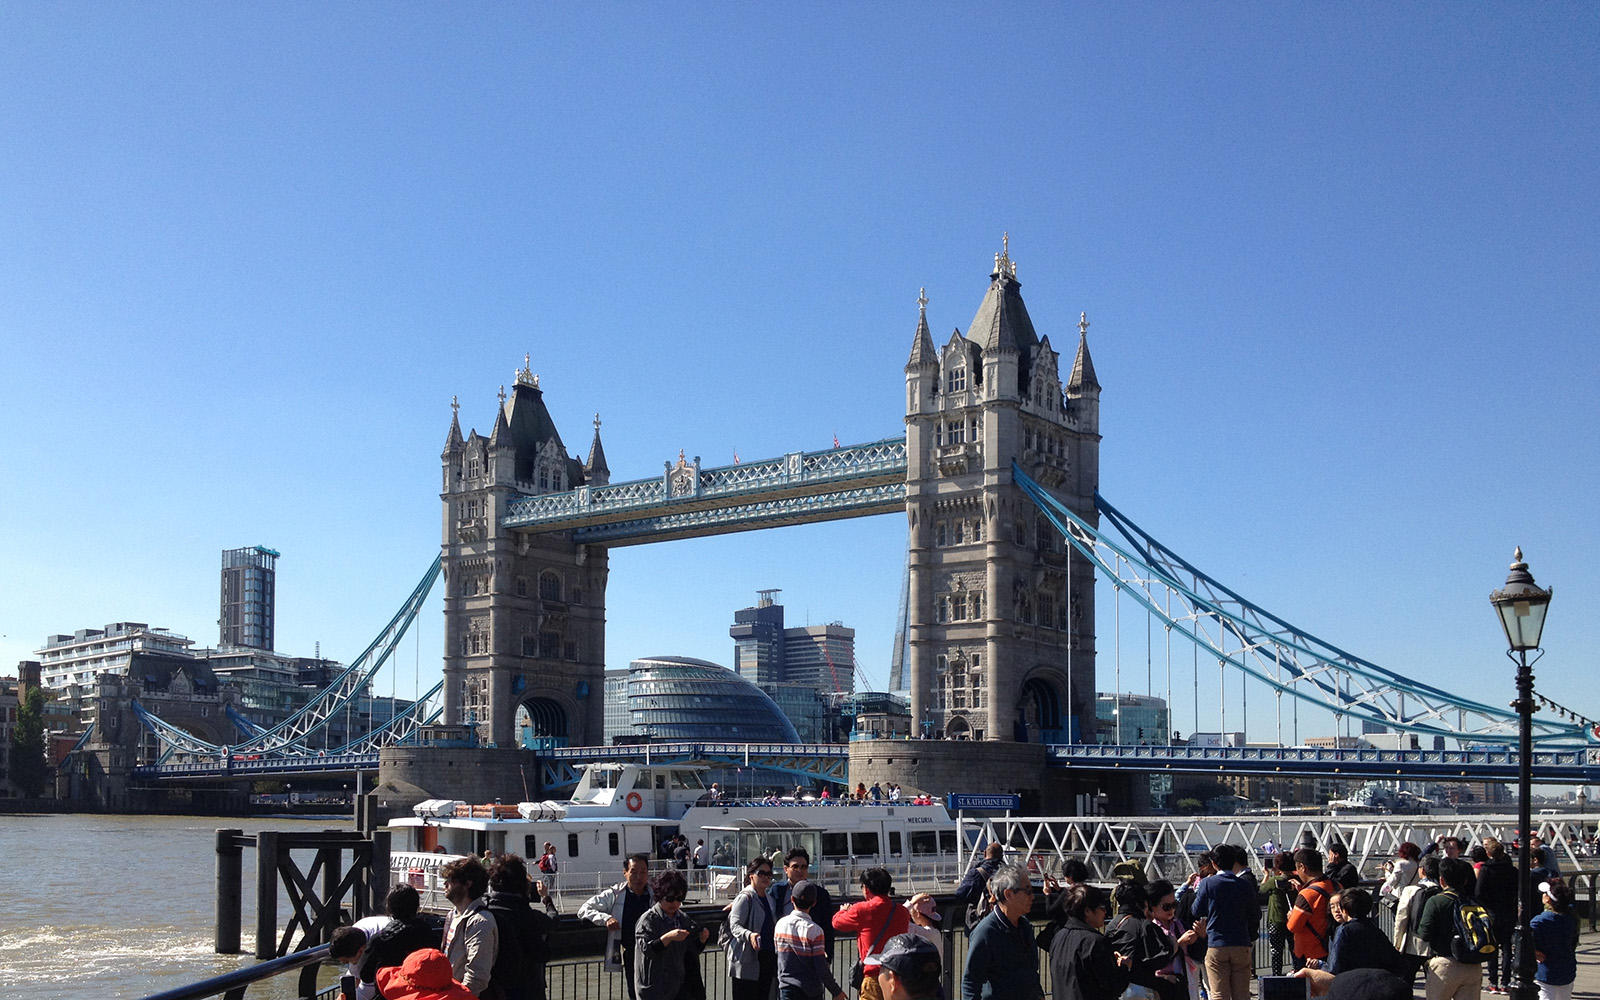 Tower Bridge 10 September 2015